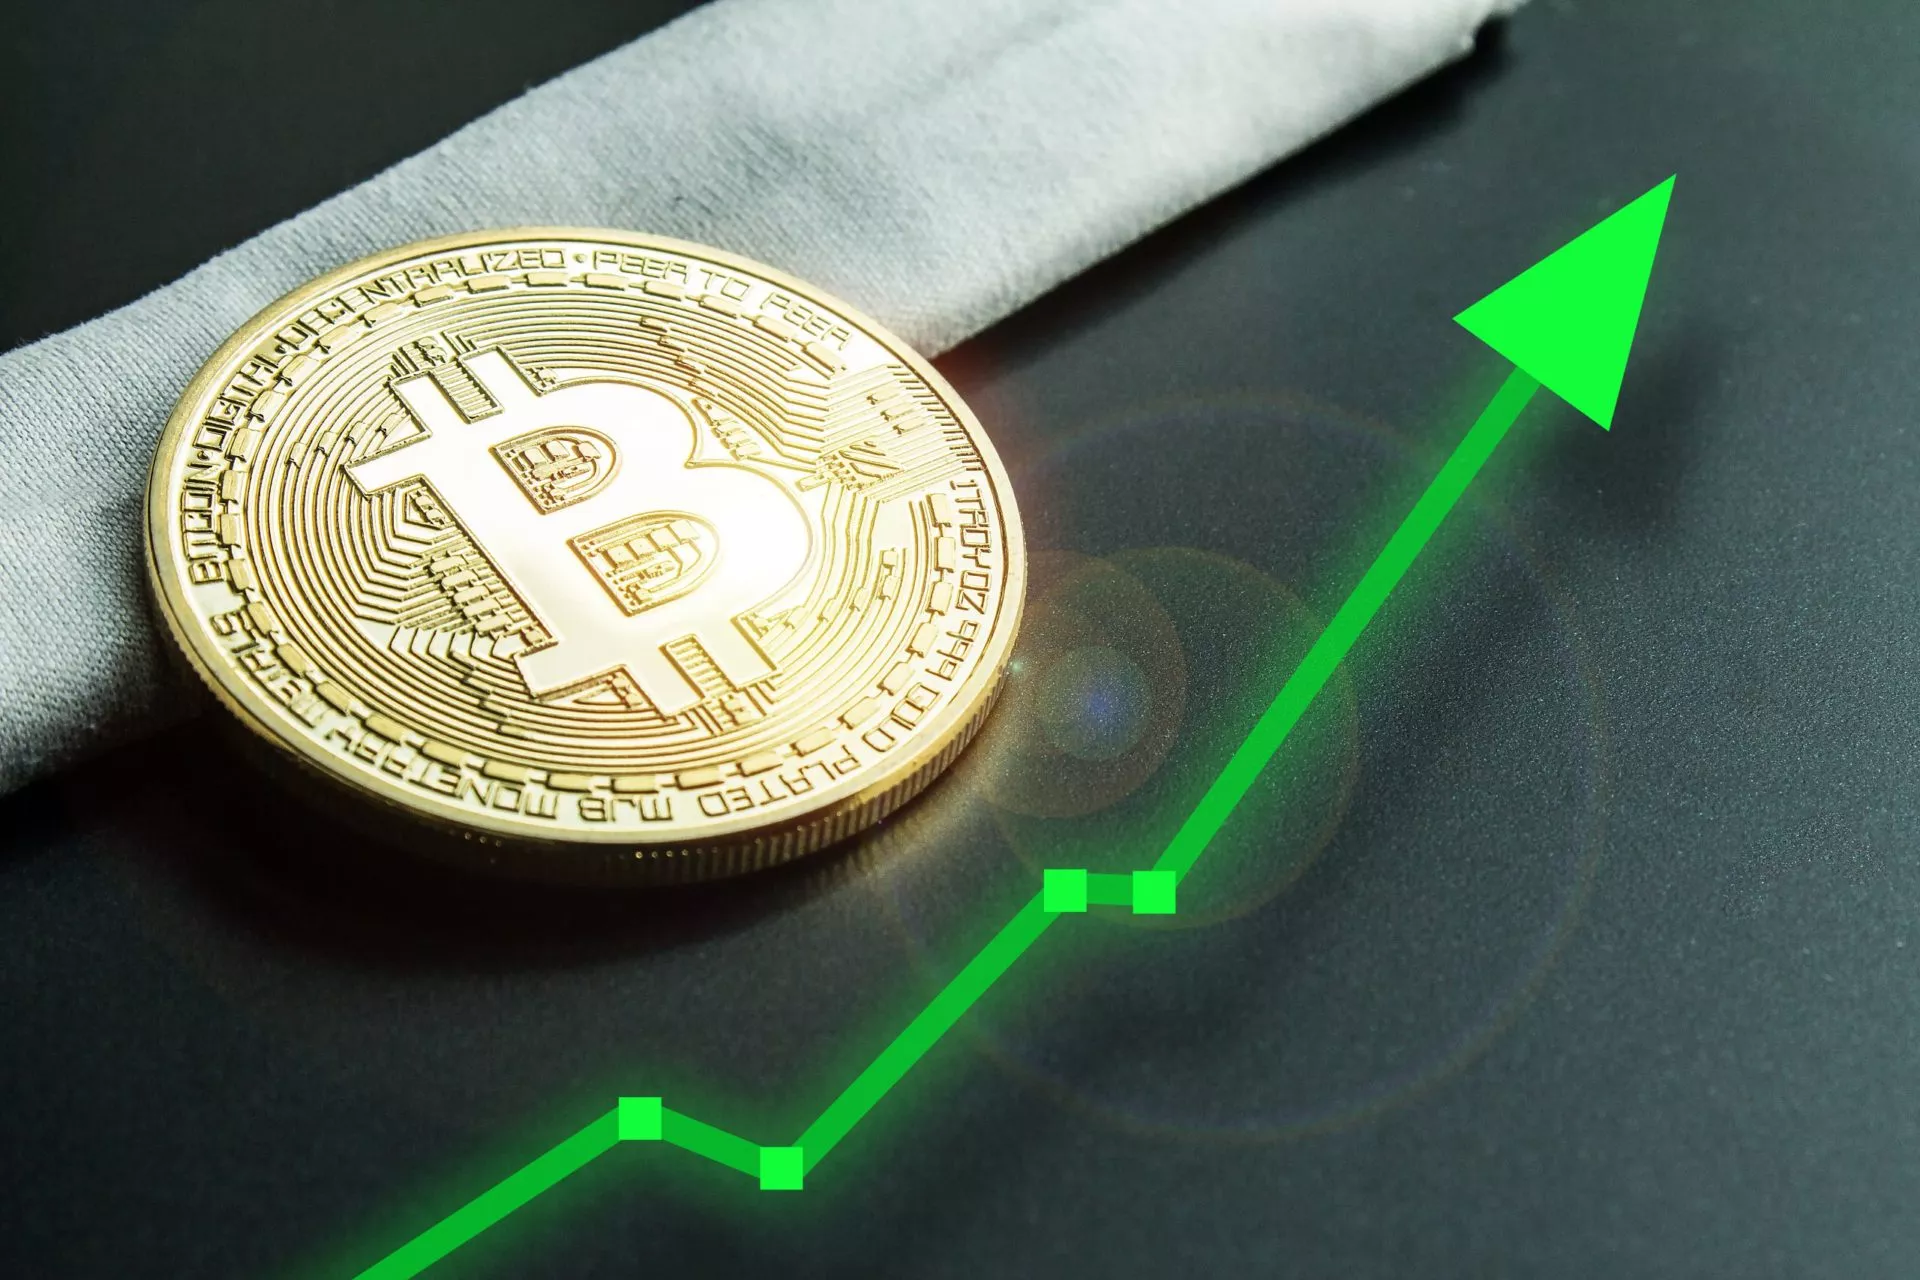 Mede oprichter van PayPal: ‘Dit is waarom de Bitcoin prijs stijgt’